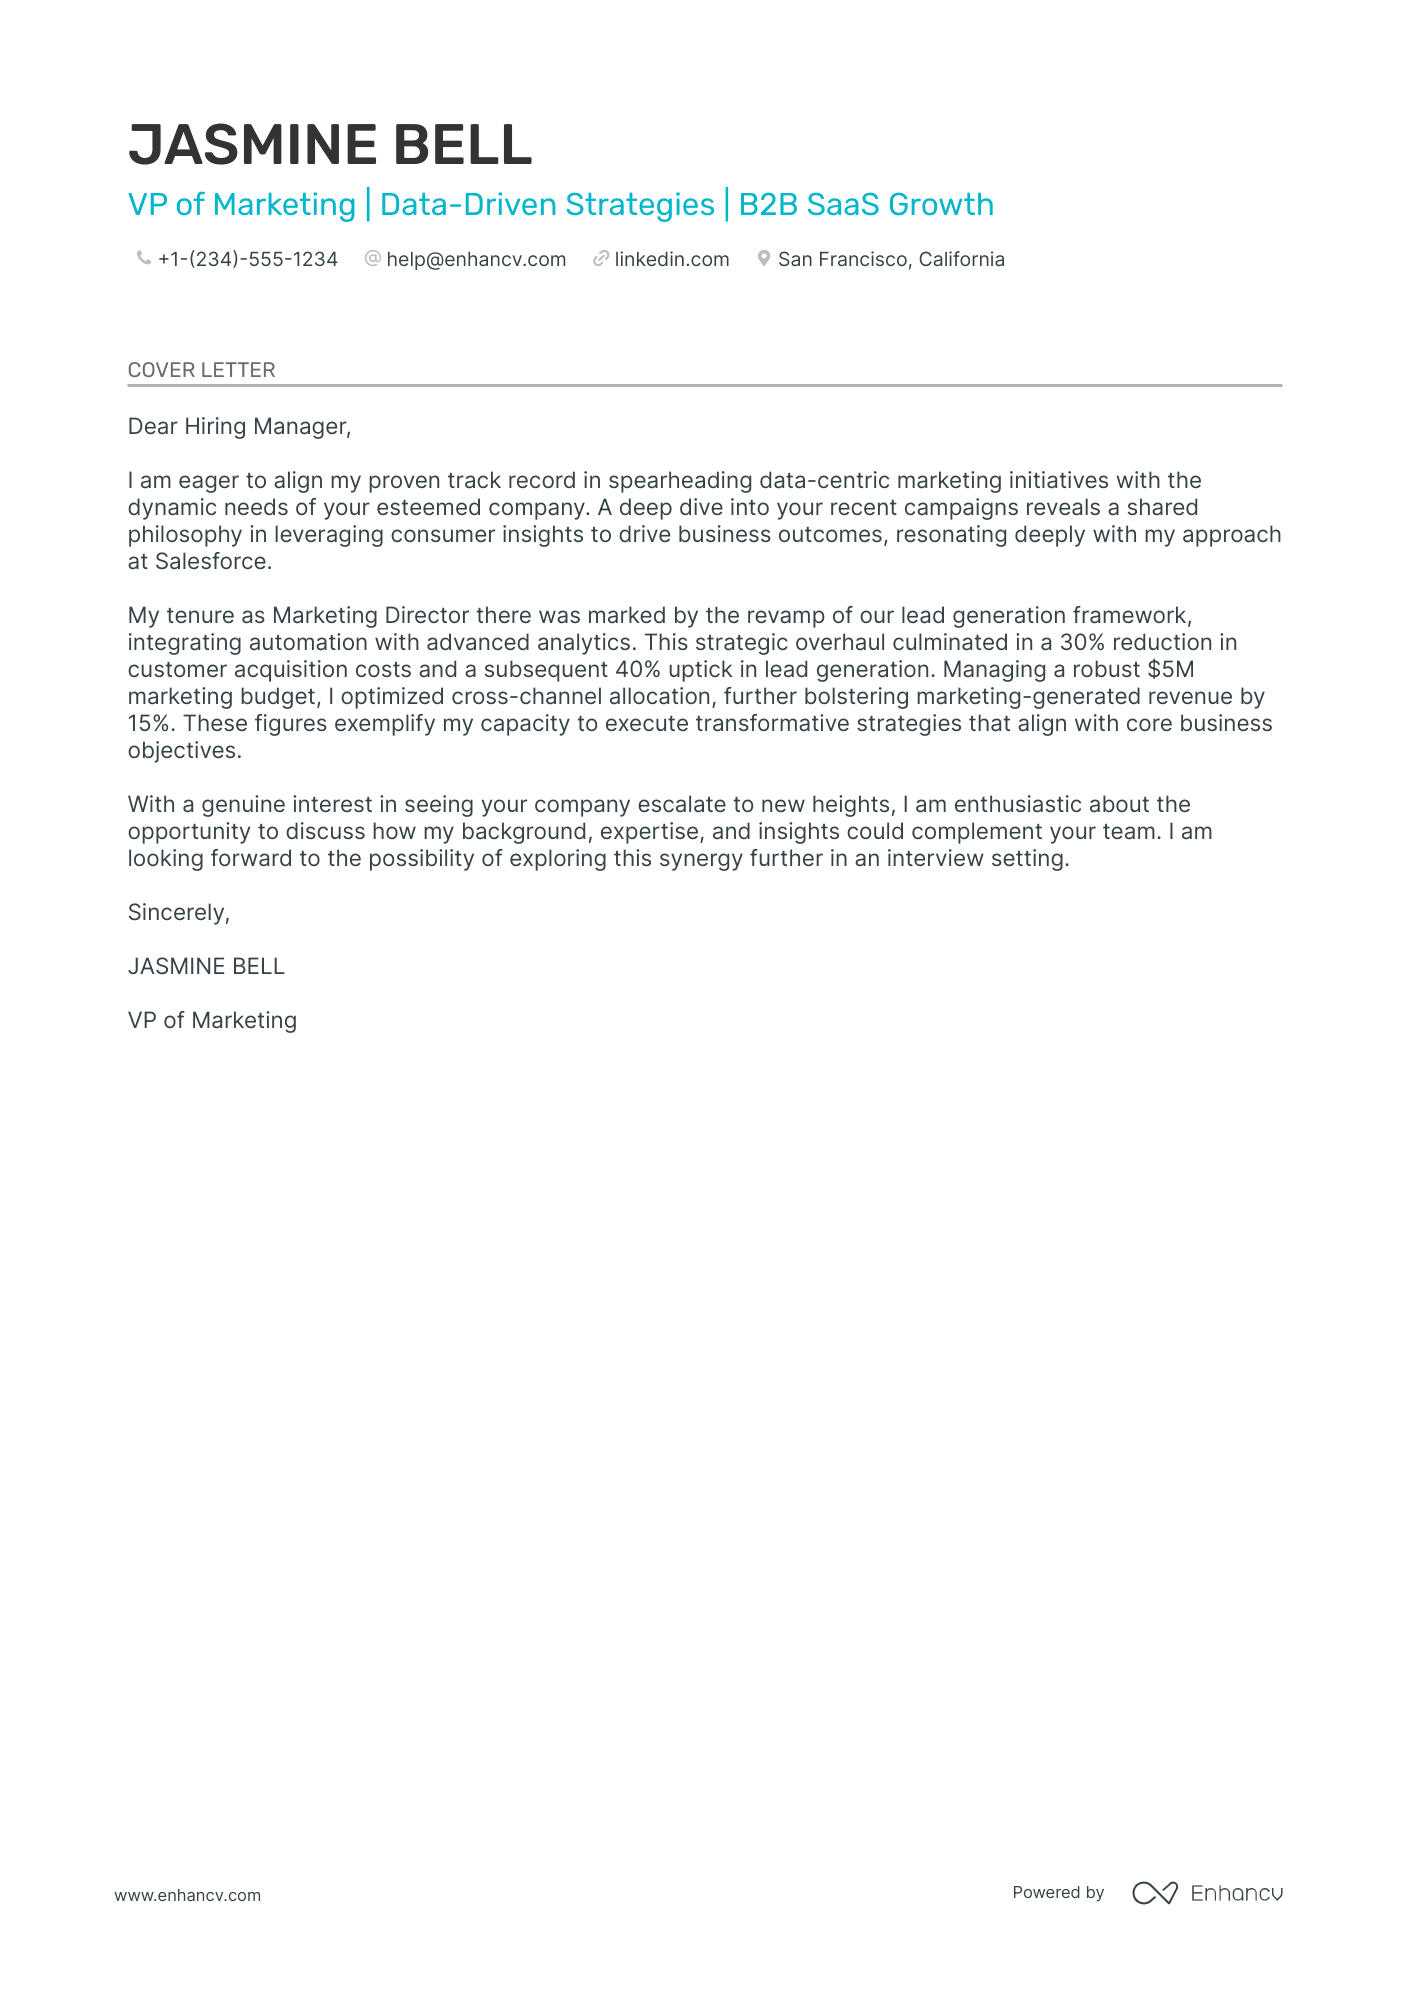 VP Marketing cover letter